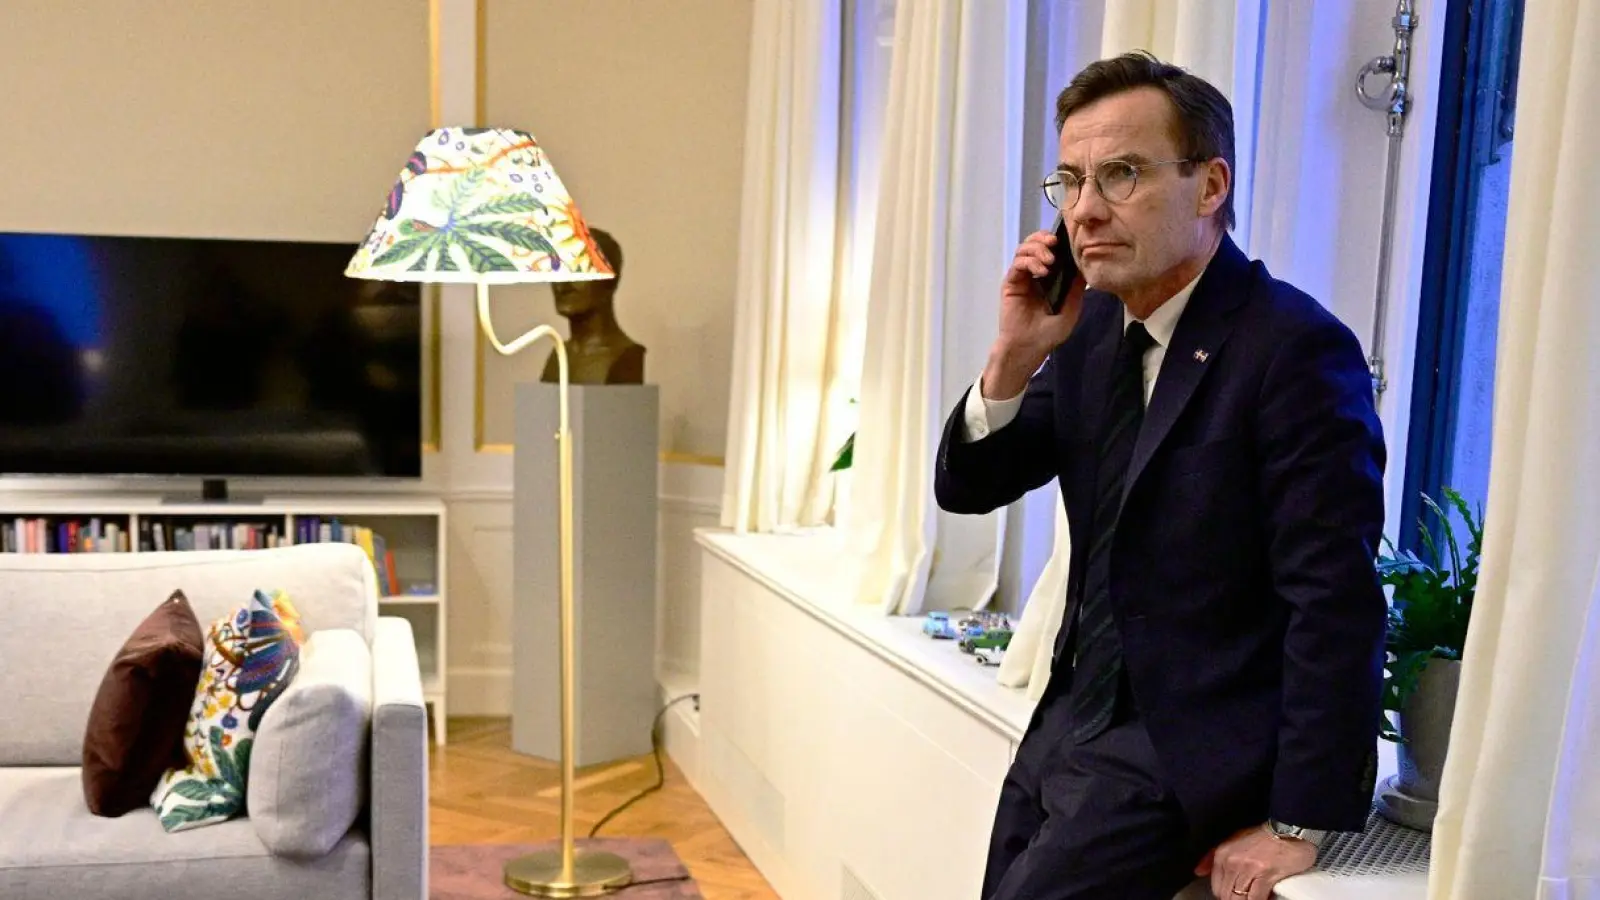 Ulf Kristersson, Ministerpräsident von Schweden, telefoniert, als er  im Regierungssitz in Stockholm die Information erhält, dass das ungarische Parlament für die Ratifizierung des schwedischen NATO-Beitritts gestimmt hat. (Foto: Magnus Lejhall/TT News Agency/AP/dpa)